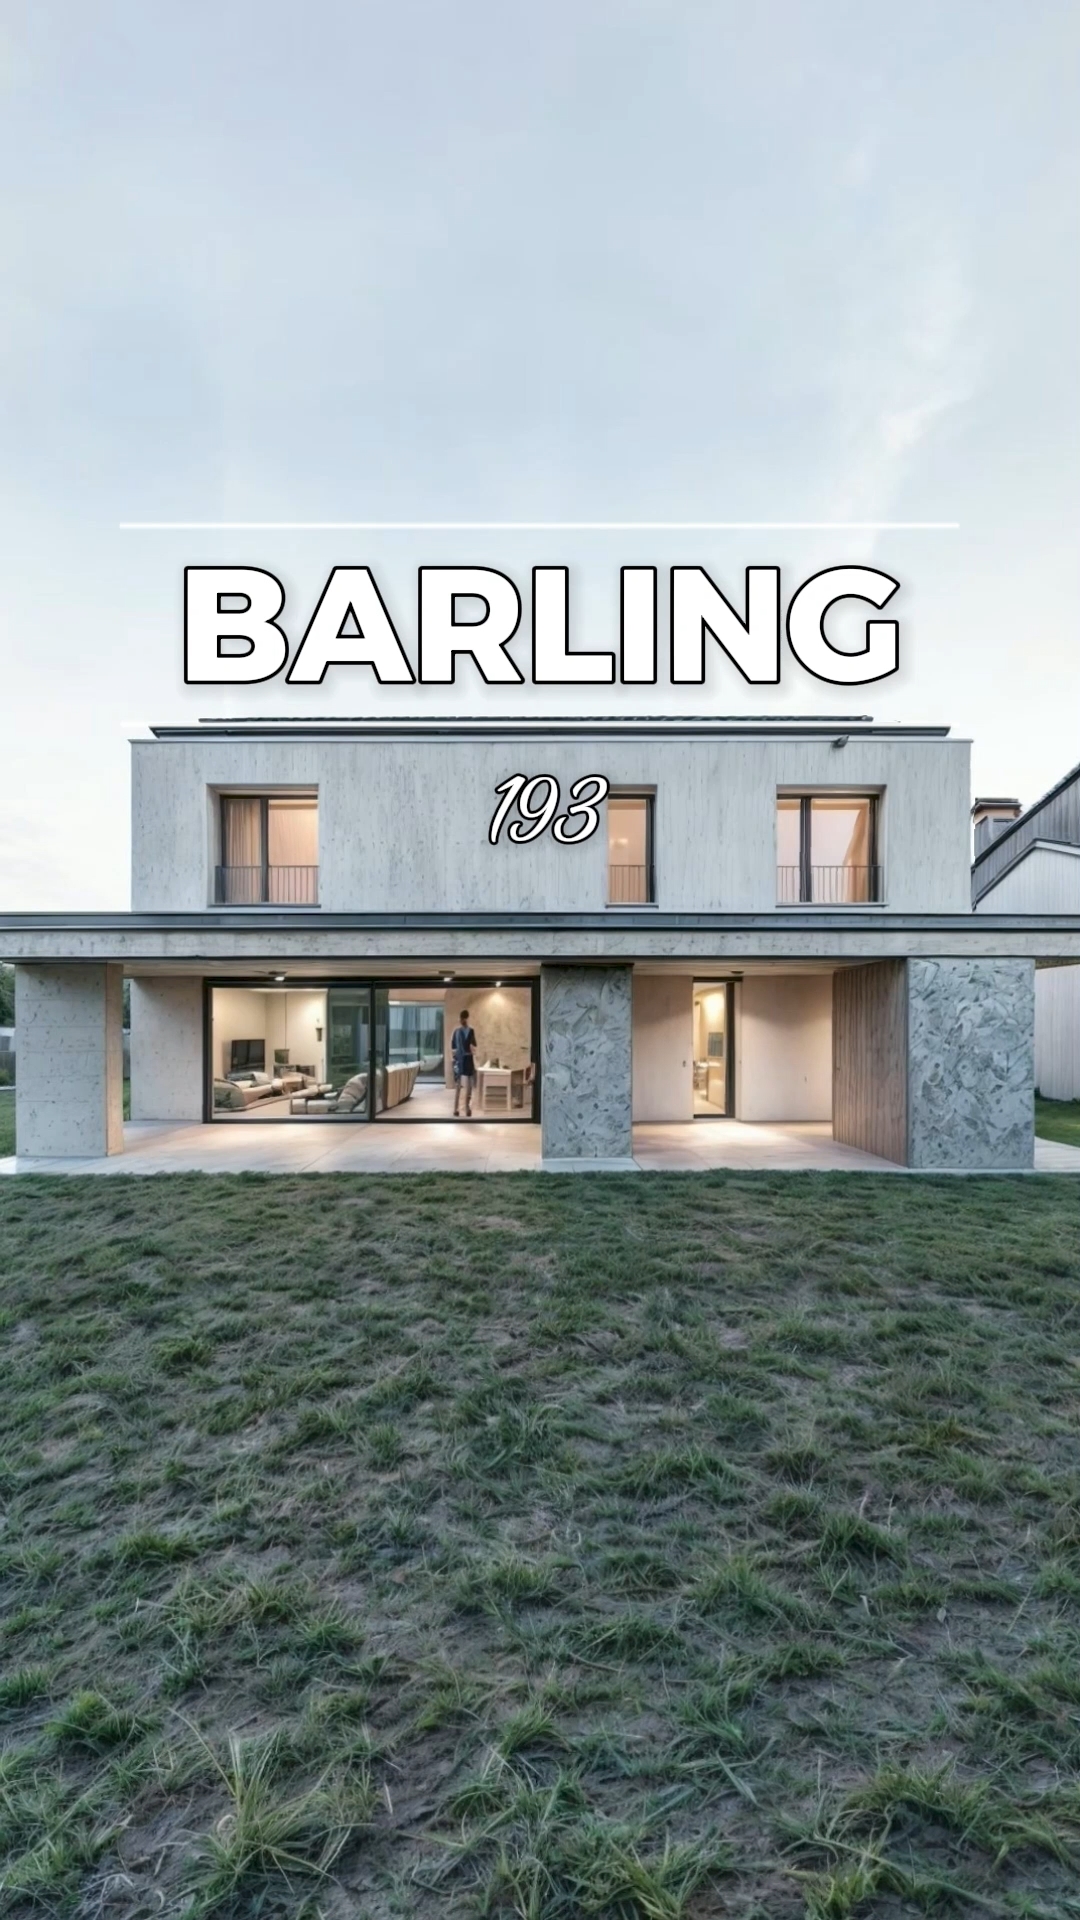 🏡 Современный дом Barling 193: Архитектурный Шедевр